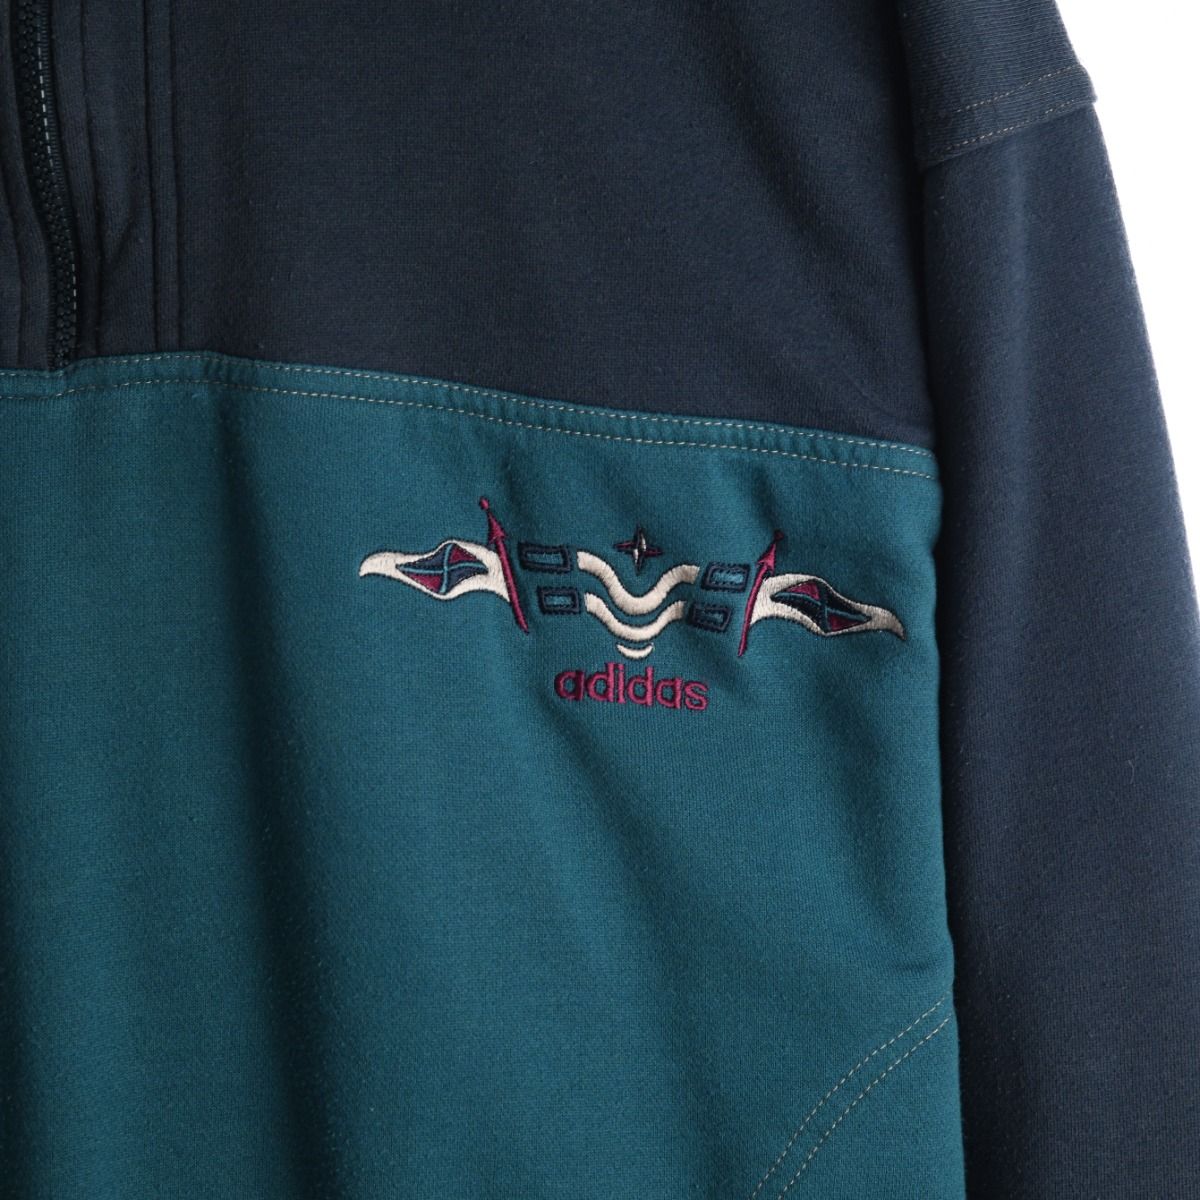 Adidas 1980s Quarter-Zip Sweatshirt